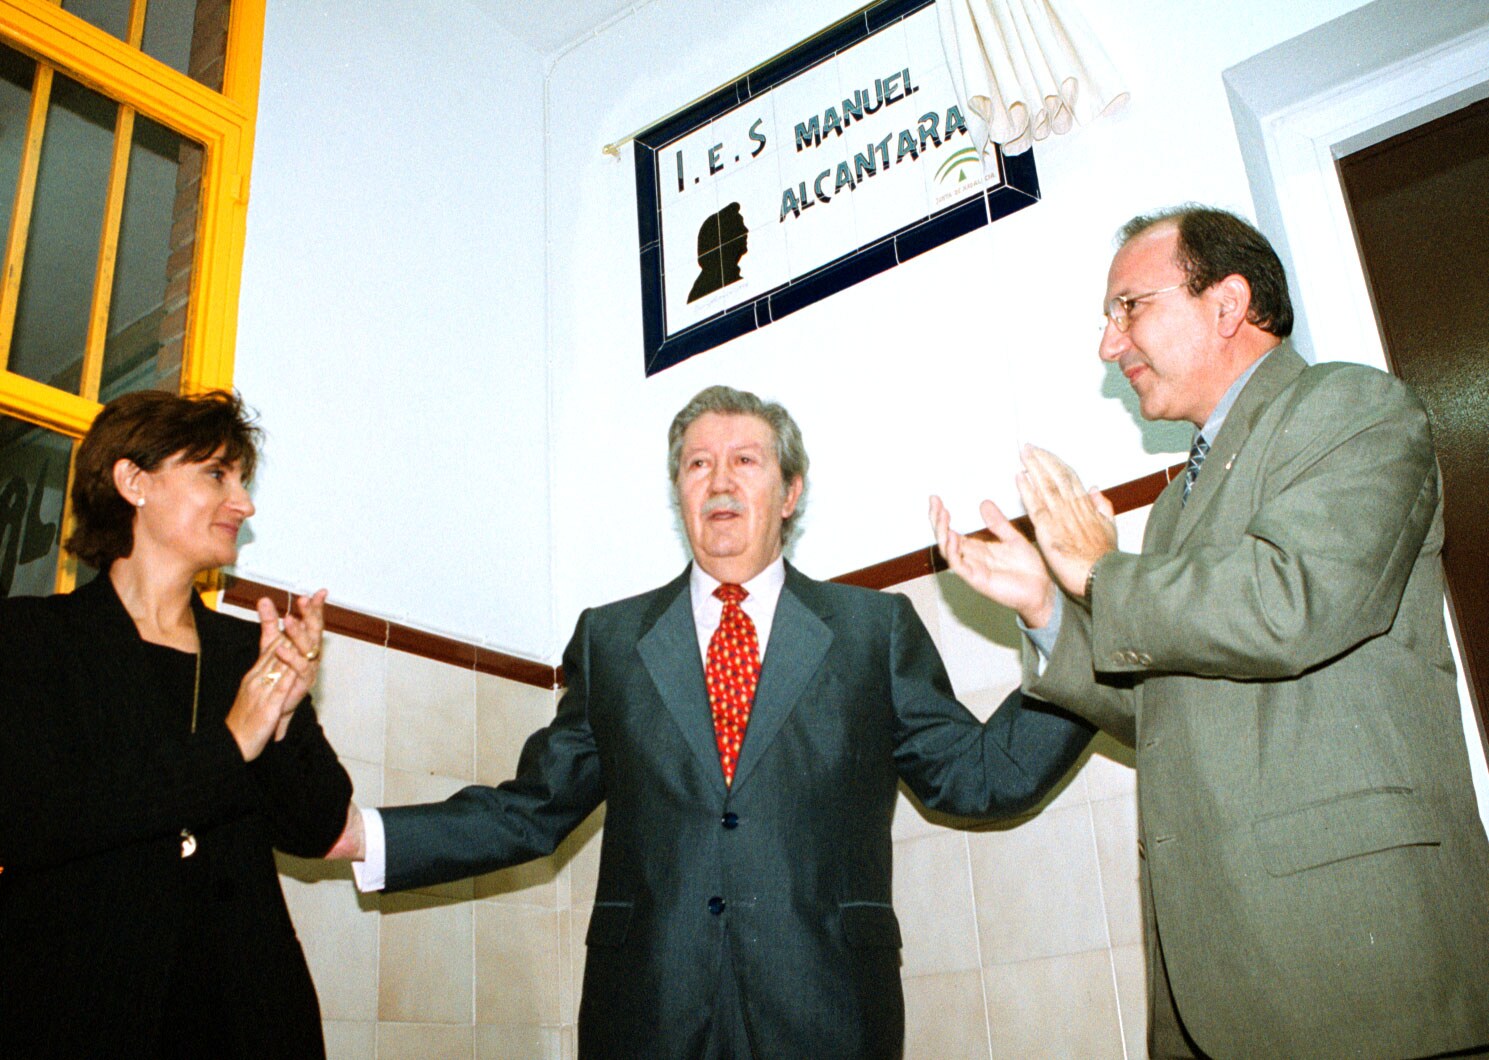 1999. Inauguración de la placa del instituto Manuel Alcántara en Málaga capital.